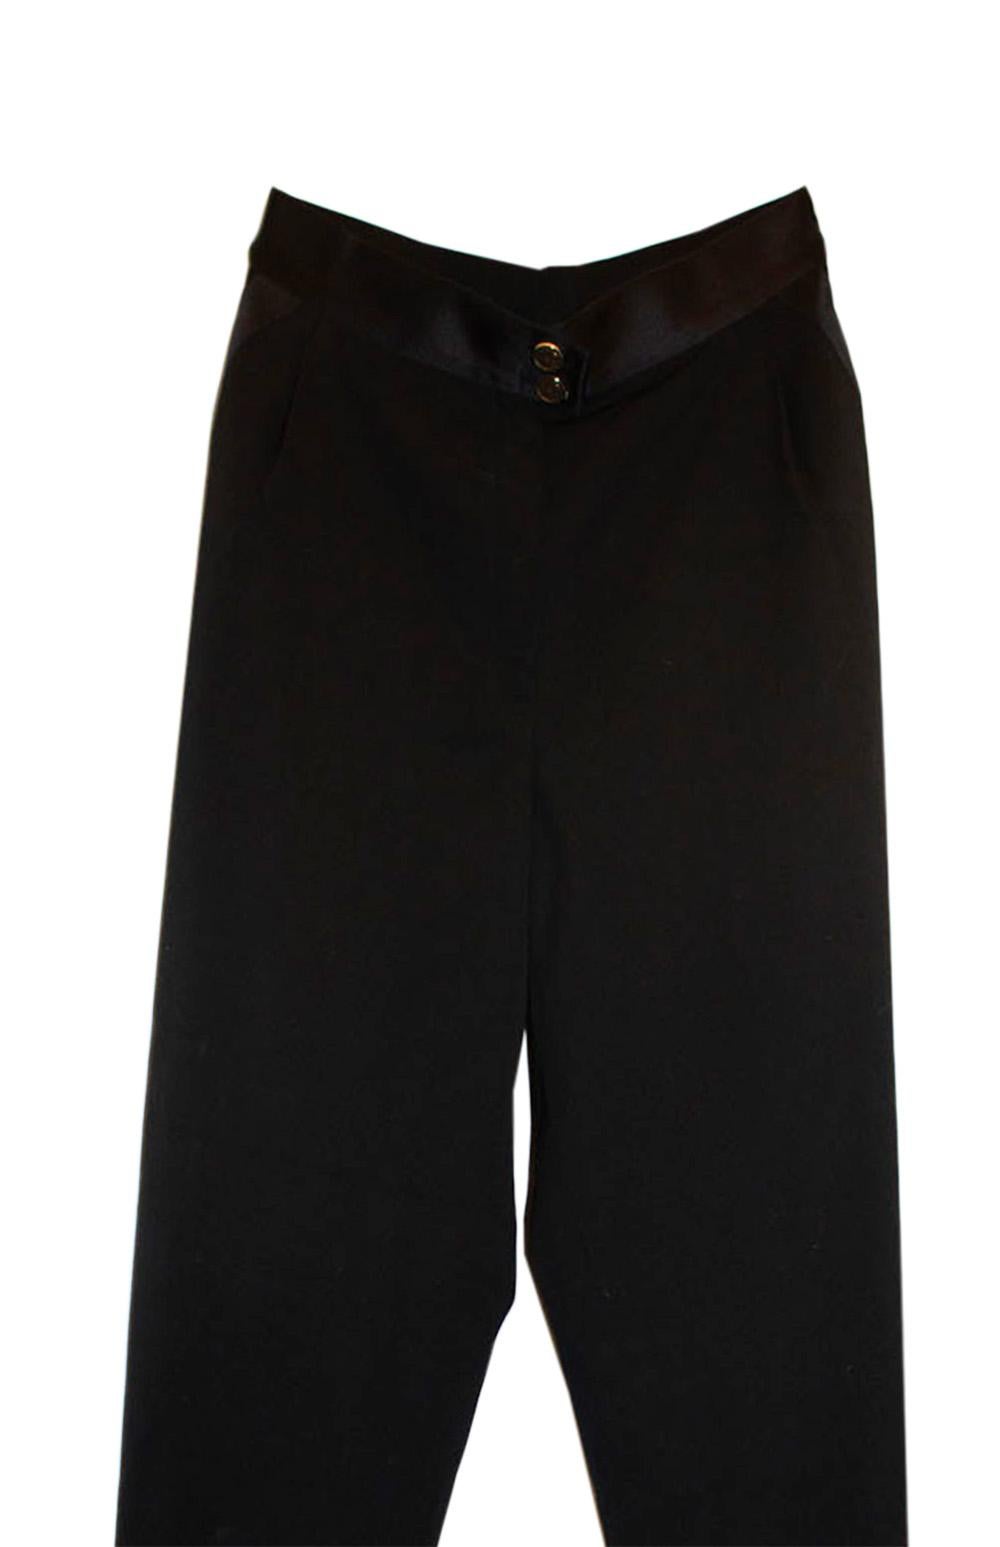 Vintage Chanel Black Tuxedo Pants /Trousers For Sale 1